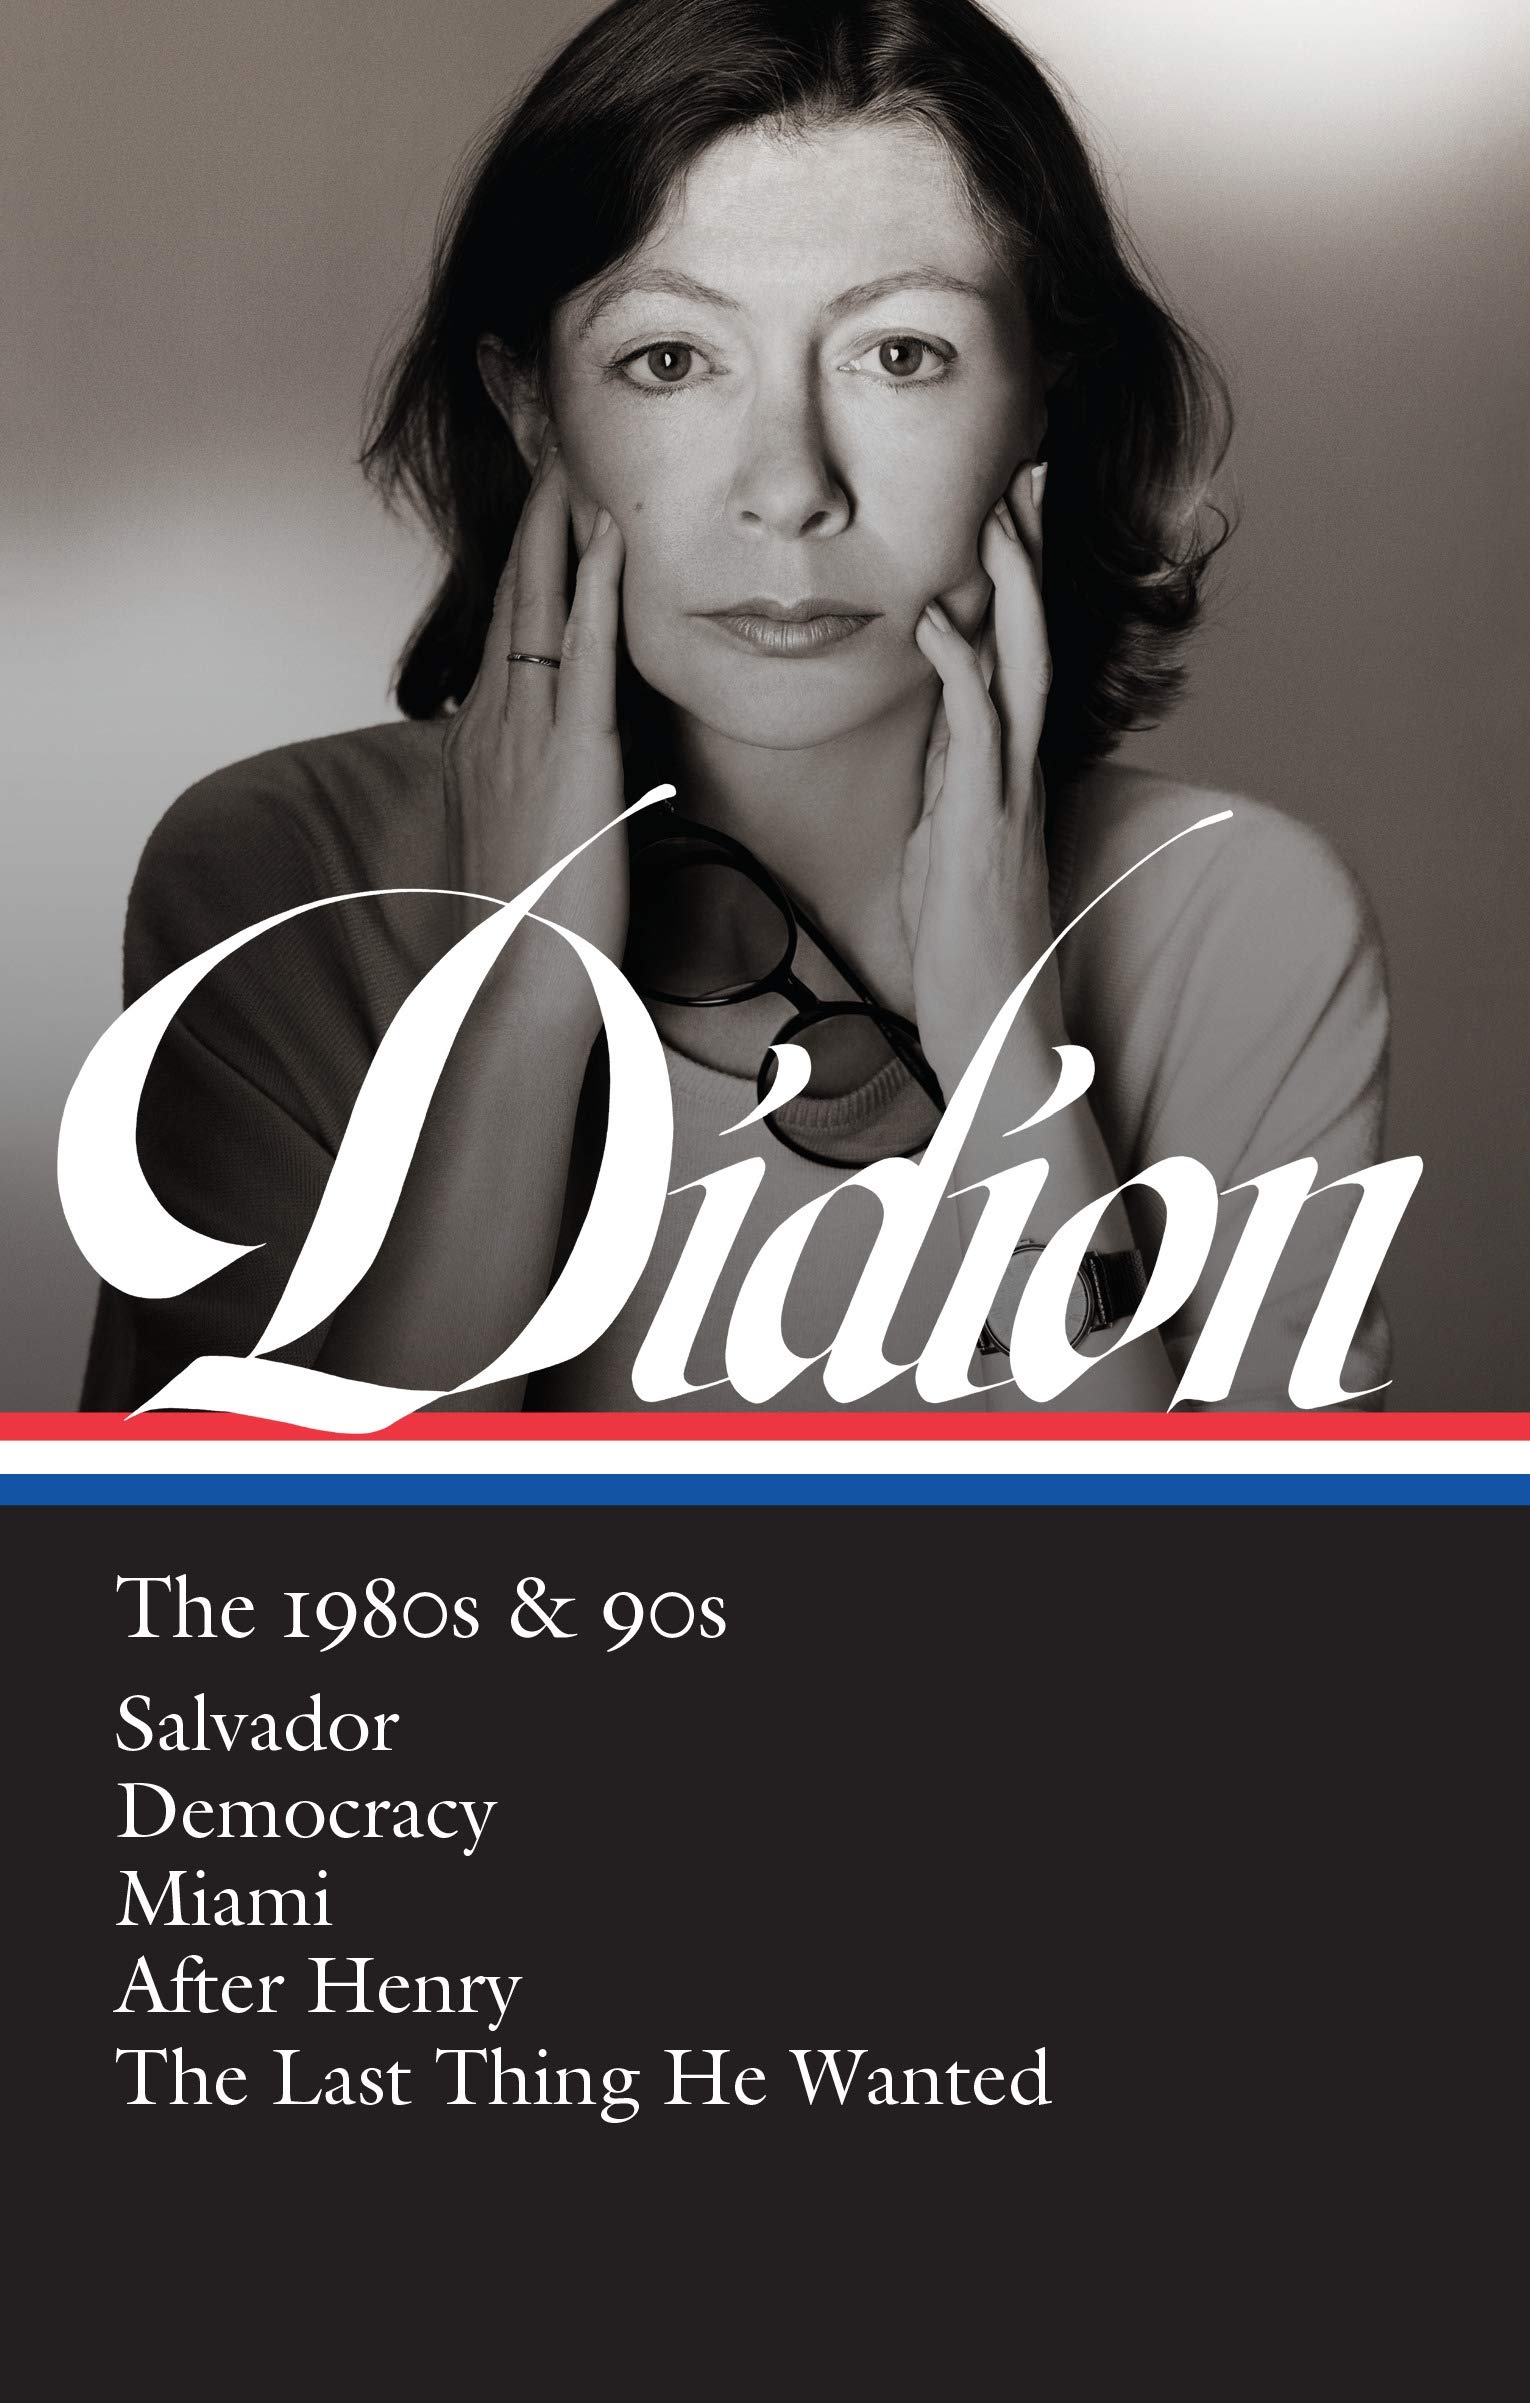 Joan Didion - Wikipedia